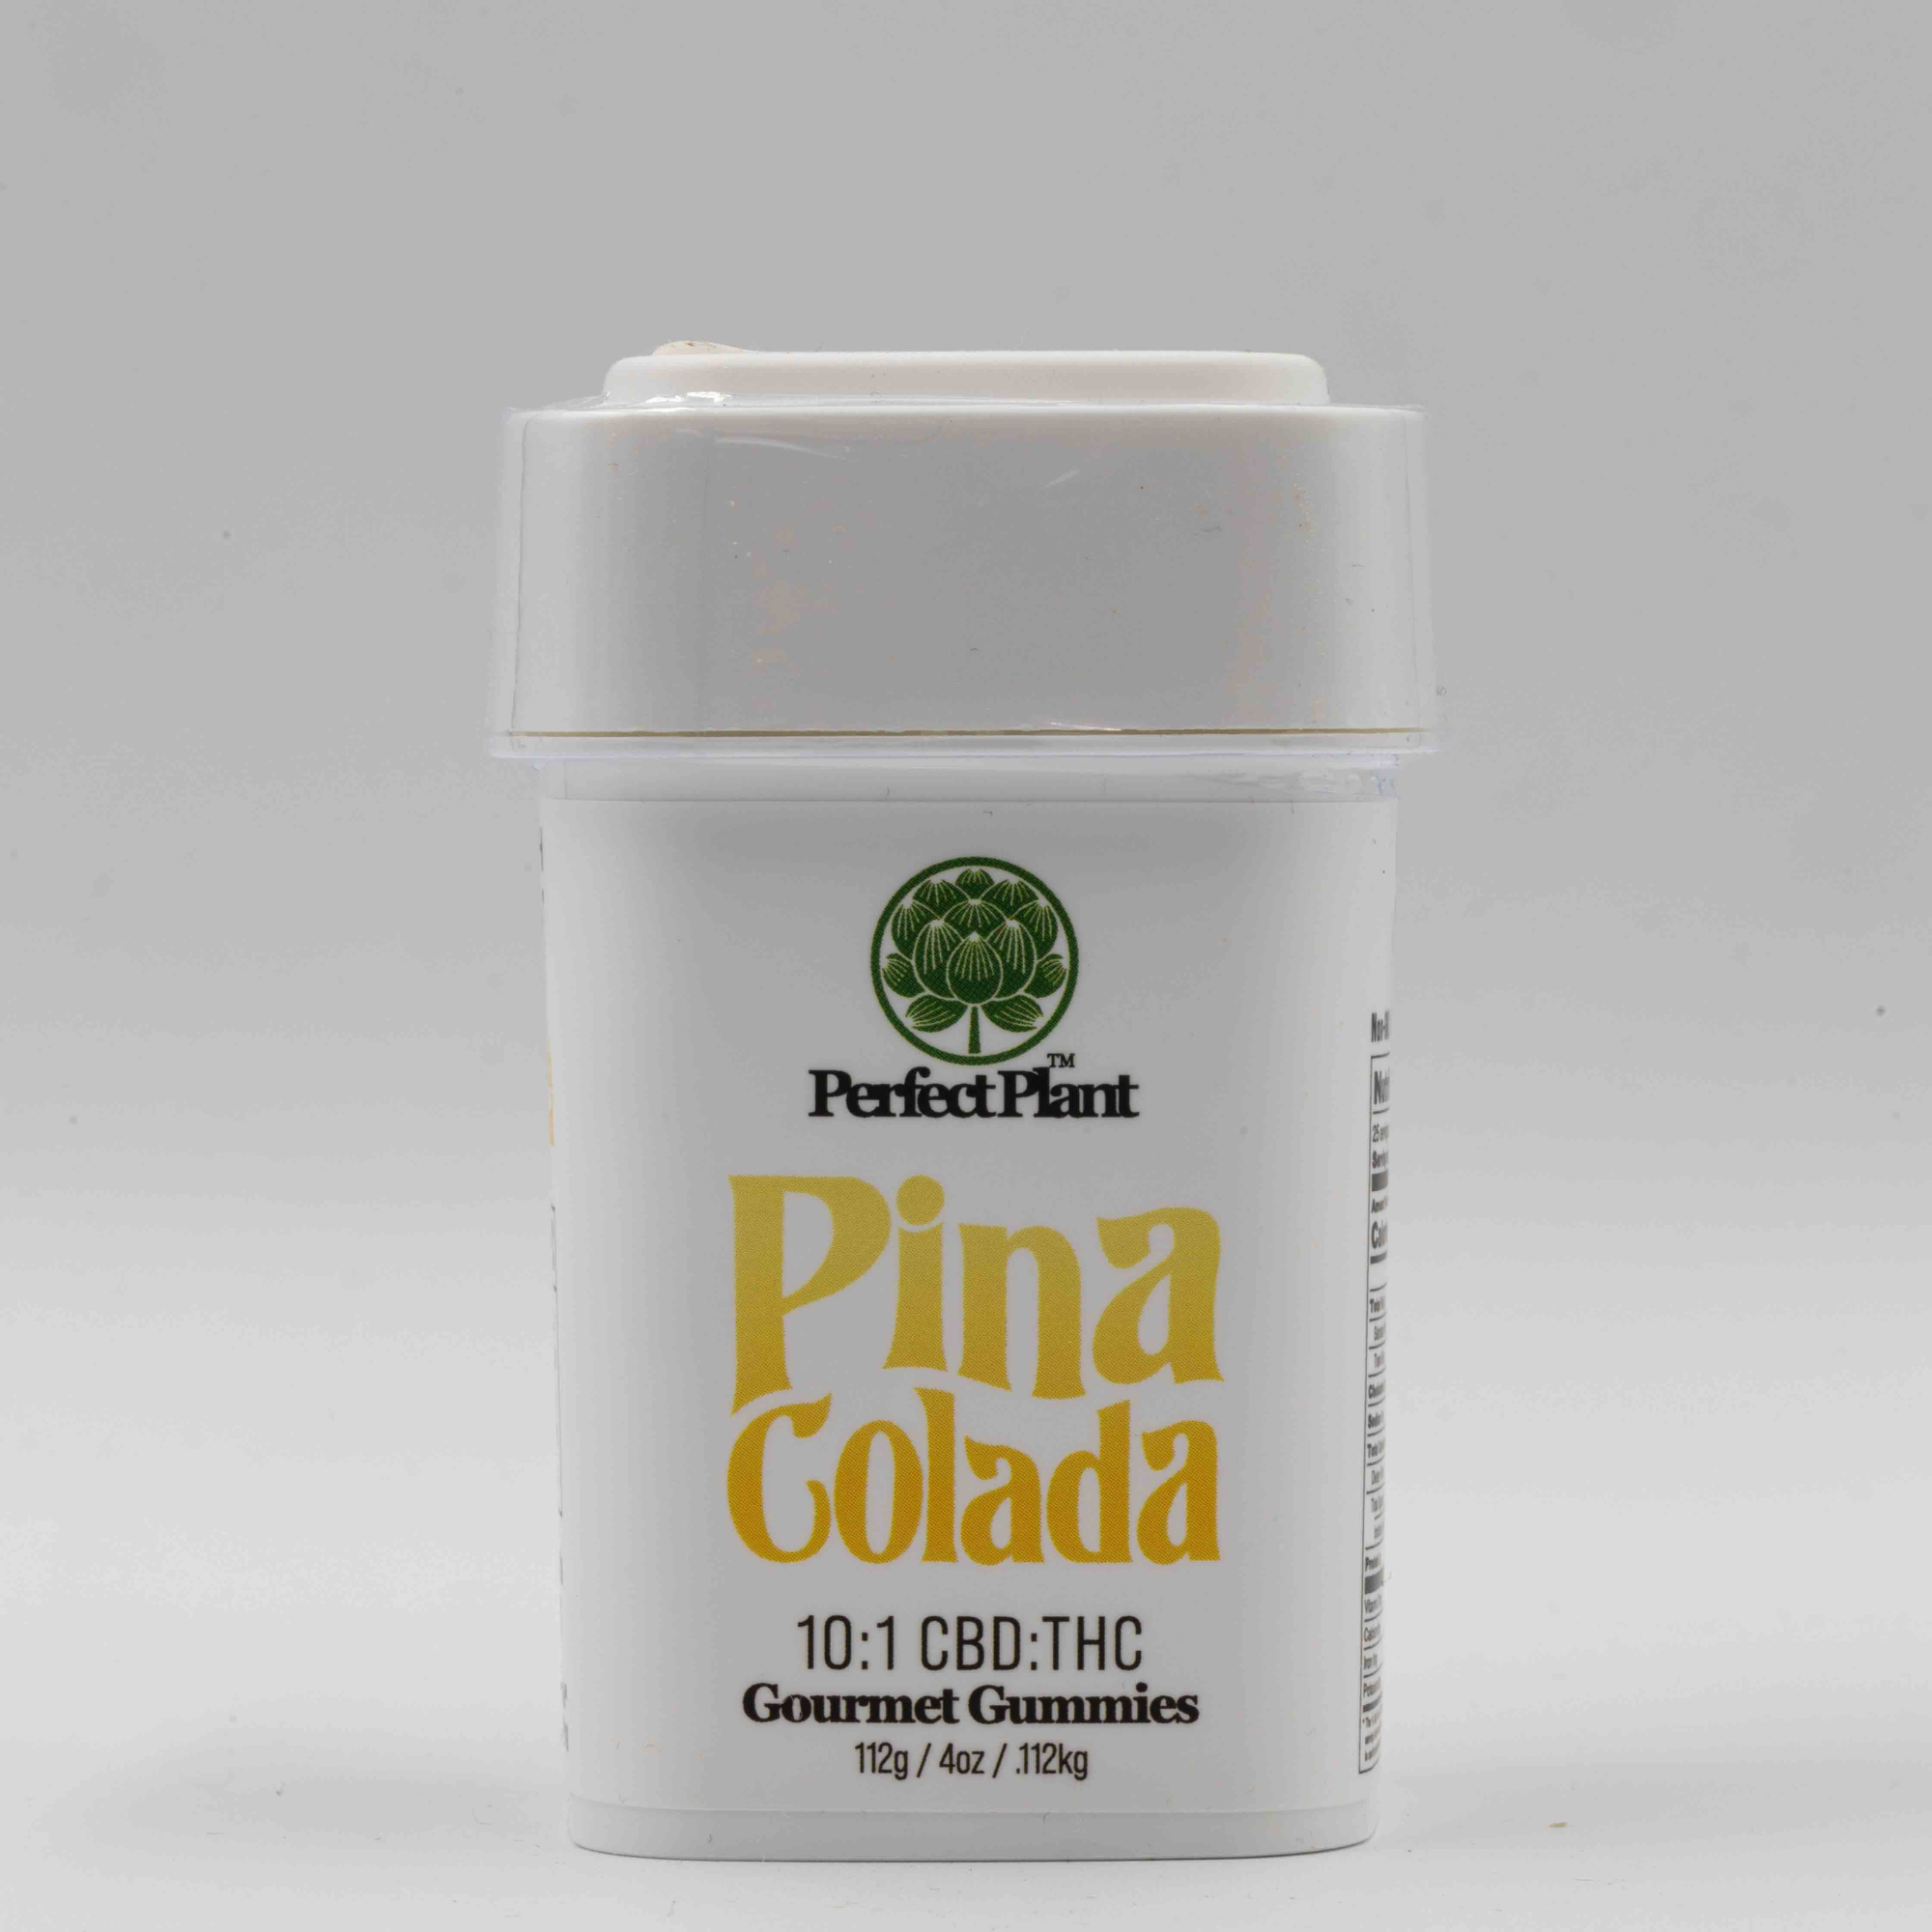 Pina Colada - Gourmet Gummies (10:1 CBD:THC)